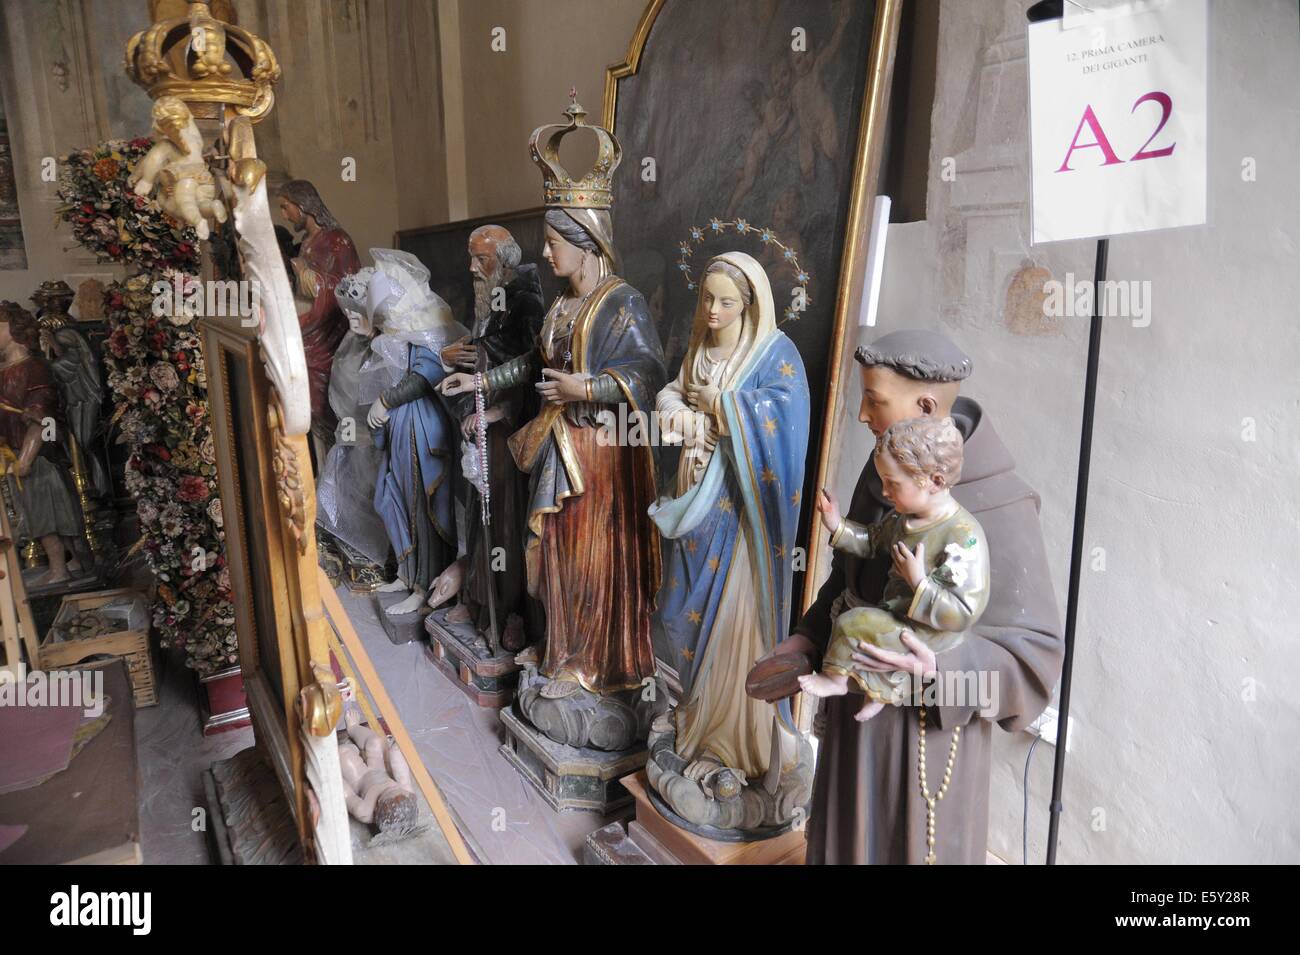 (Sassuolo Emilia-Romagna, Italie) la restauration du patrimoine culturel endommagé par le tremblement de terre de 2012 Banque D'Images